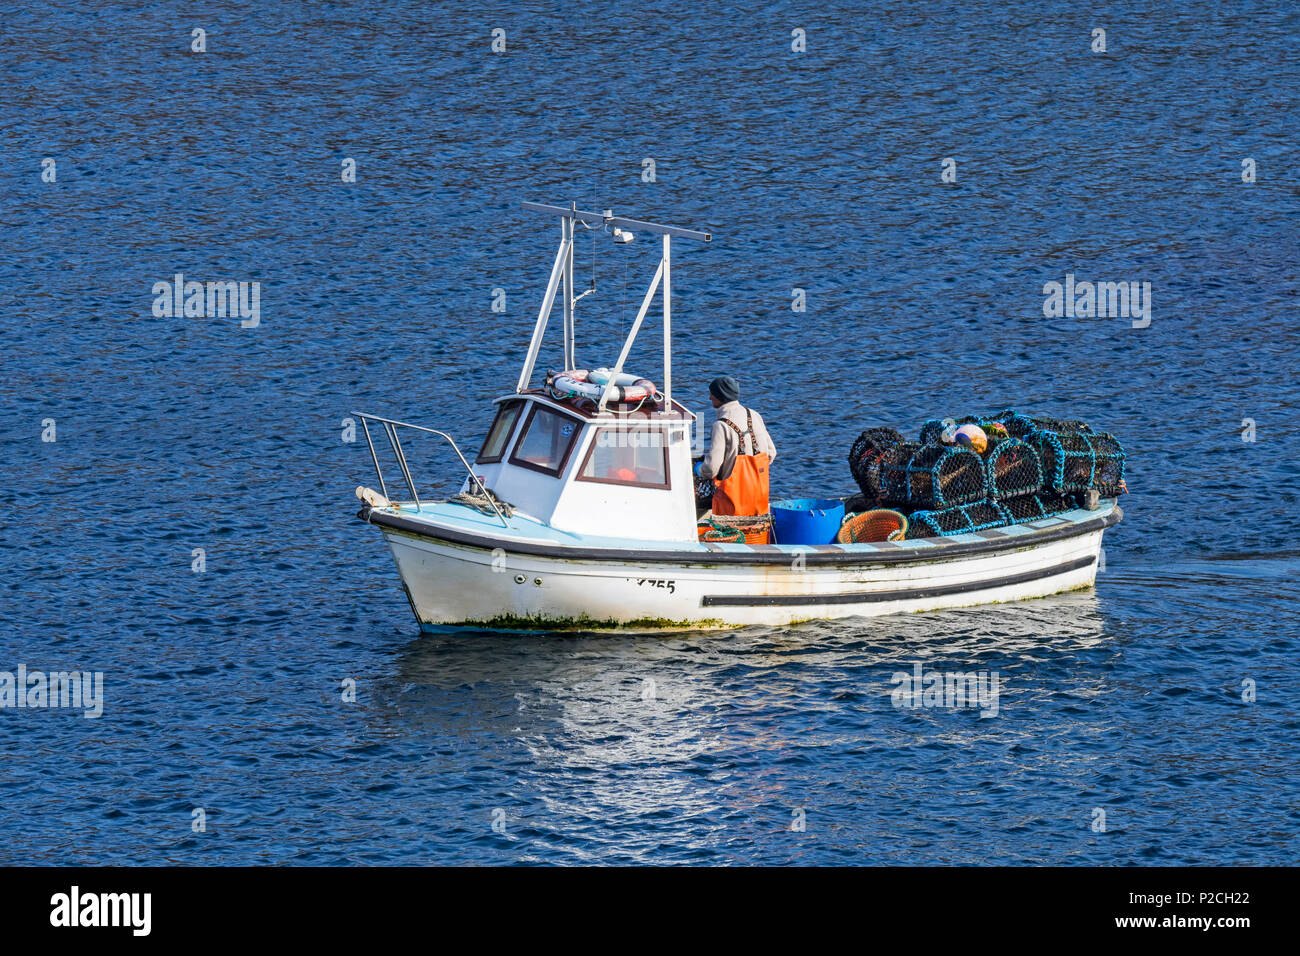 Pescatore in piccola barca da pesca la caduta / tiro trap aragosta / Lobster Pot / aragosta cantre nell'Oceano Atlantico, Scotland, Regno Unito Foto Stock